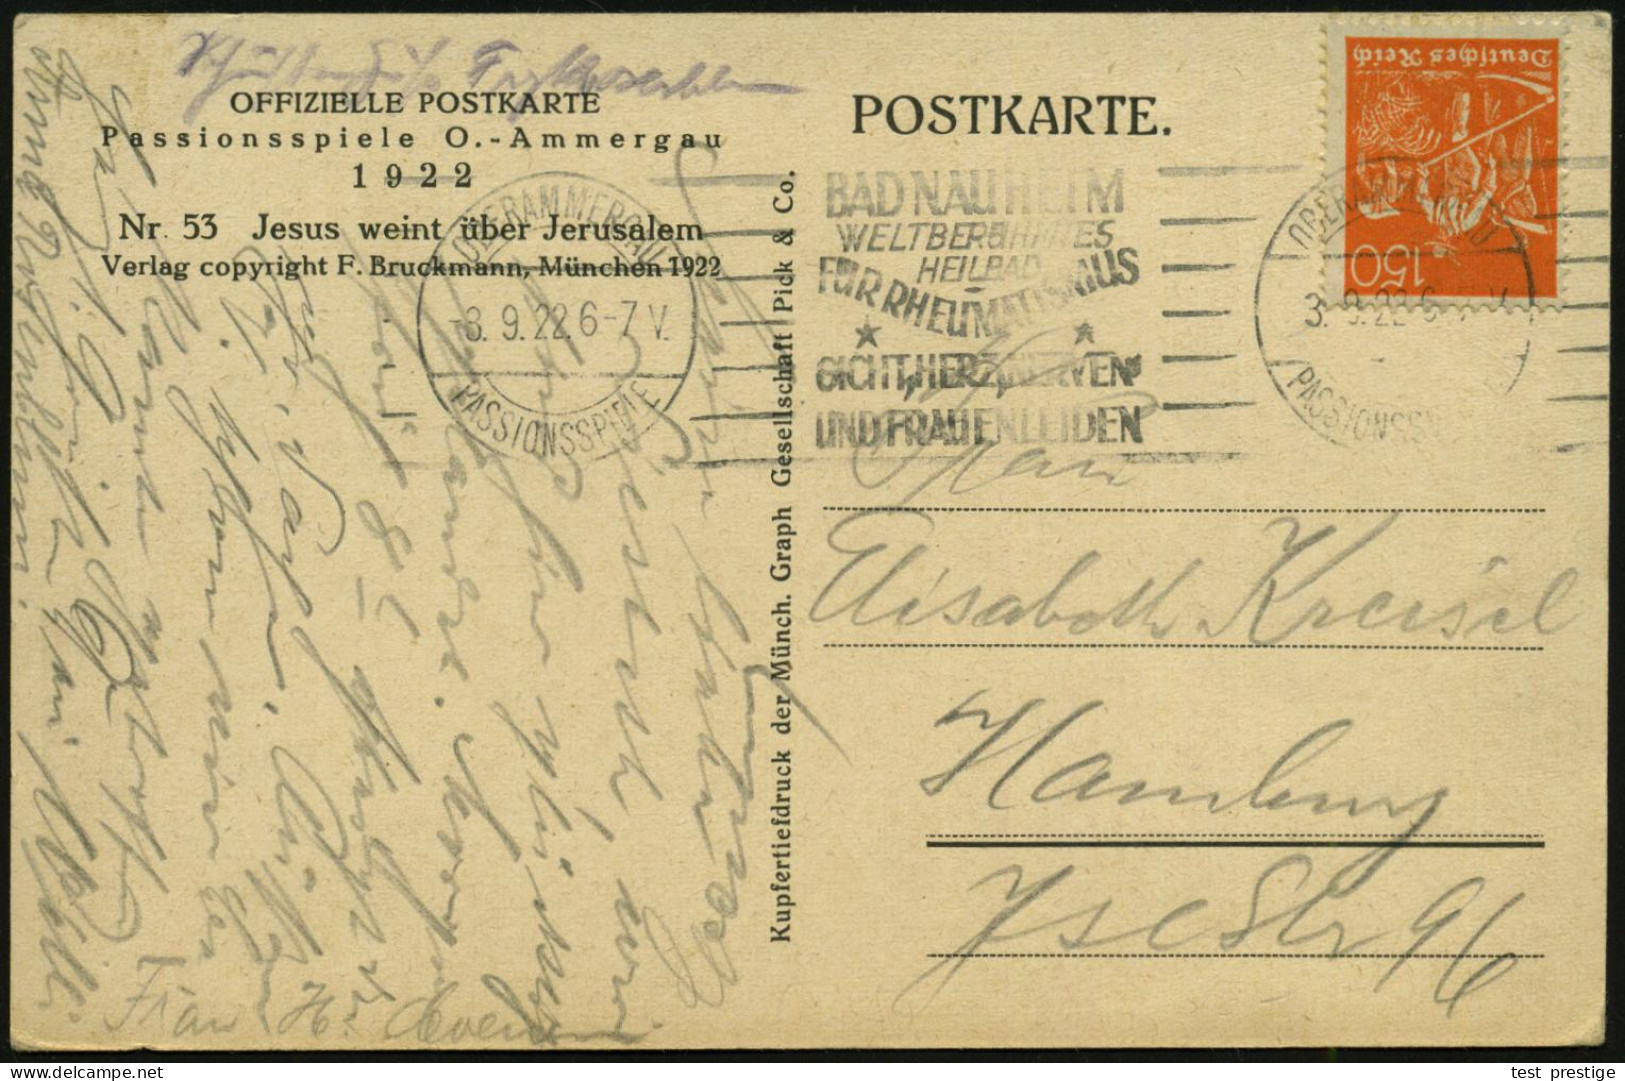 OBERAMMERGAU/ PASSIONSSPIELE/ BAD NAUHEIM/ ..HEILBAD/ FÜR RHEUMATISMUS/ GICHT.. 1922 (8.9.) Seltener Band-MWSt (Sonderfo - Maladies